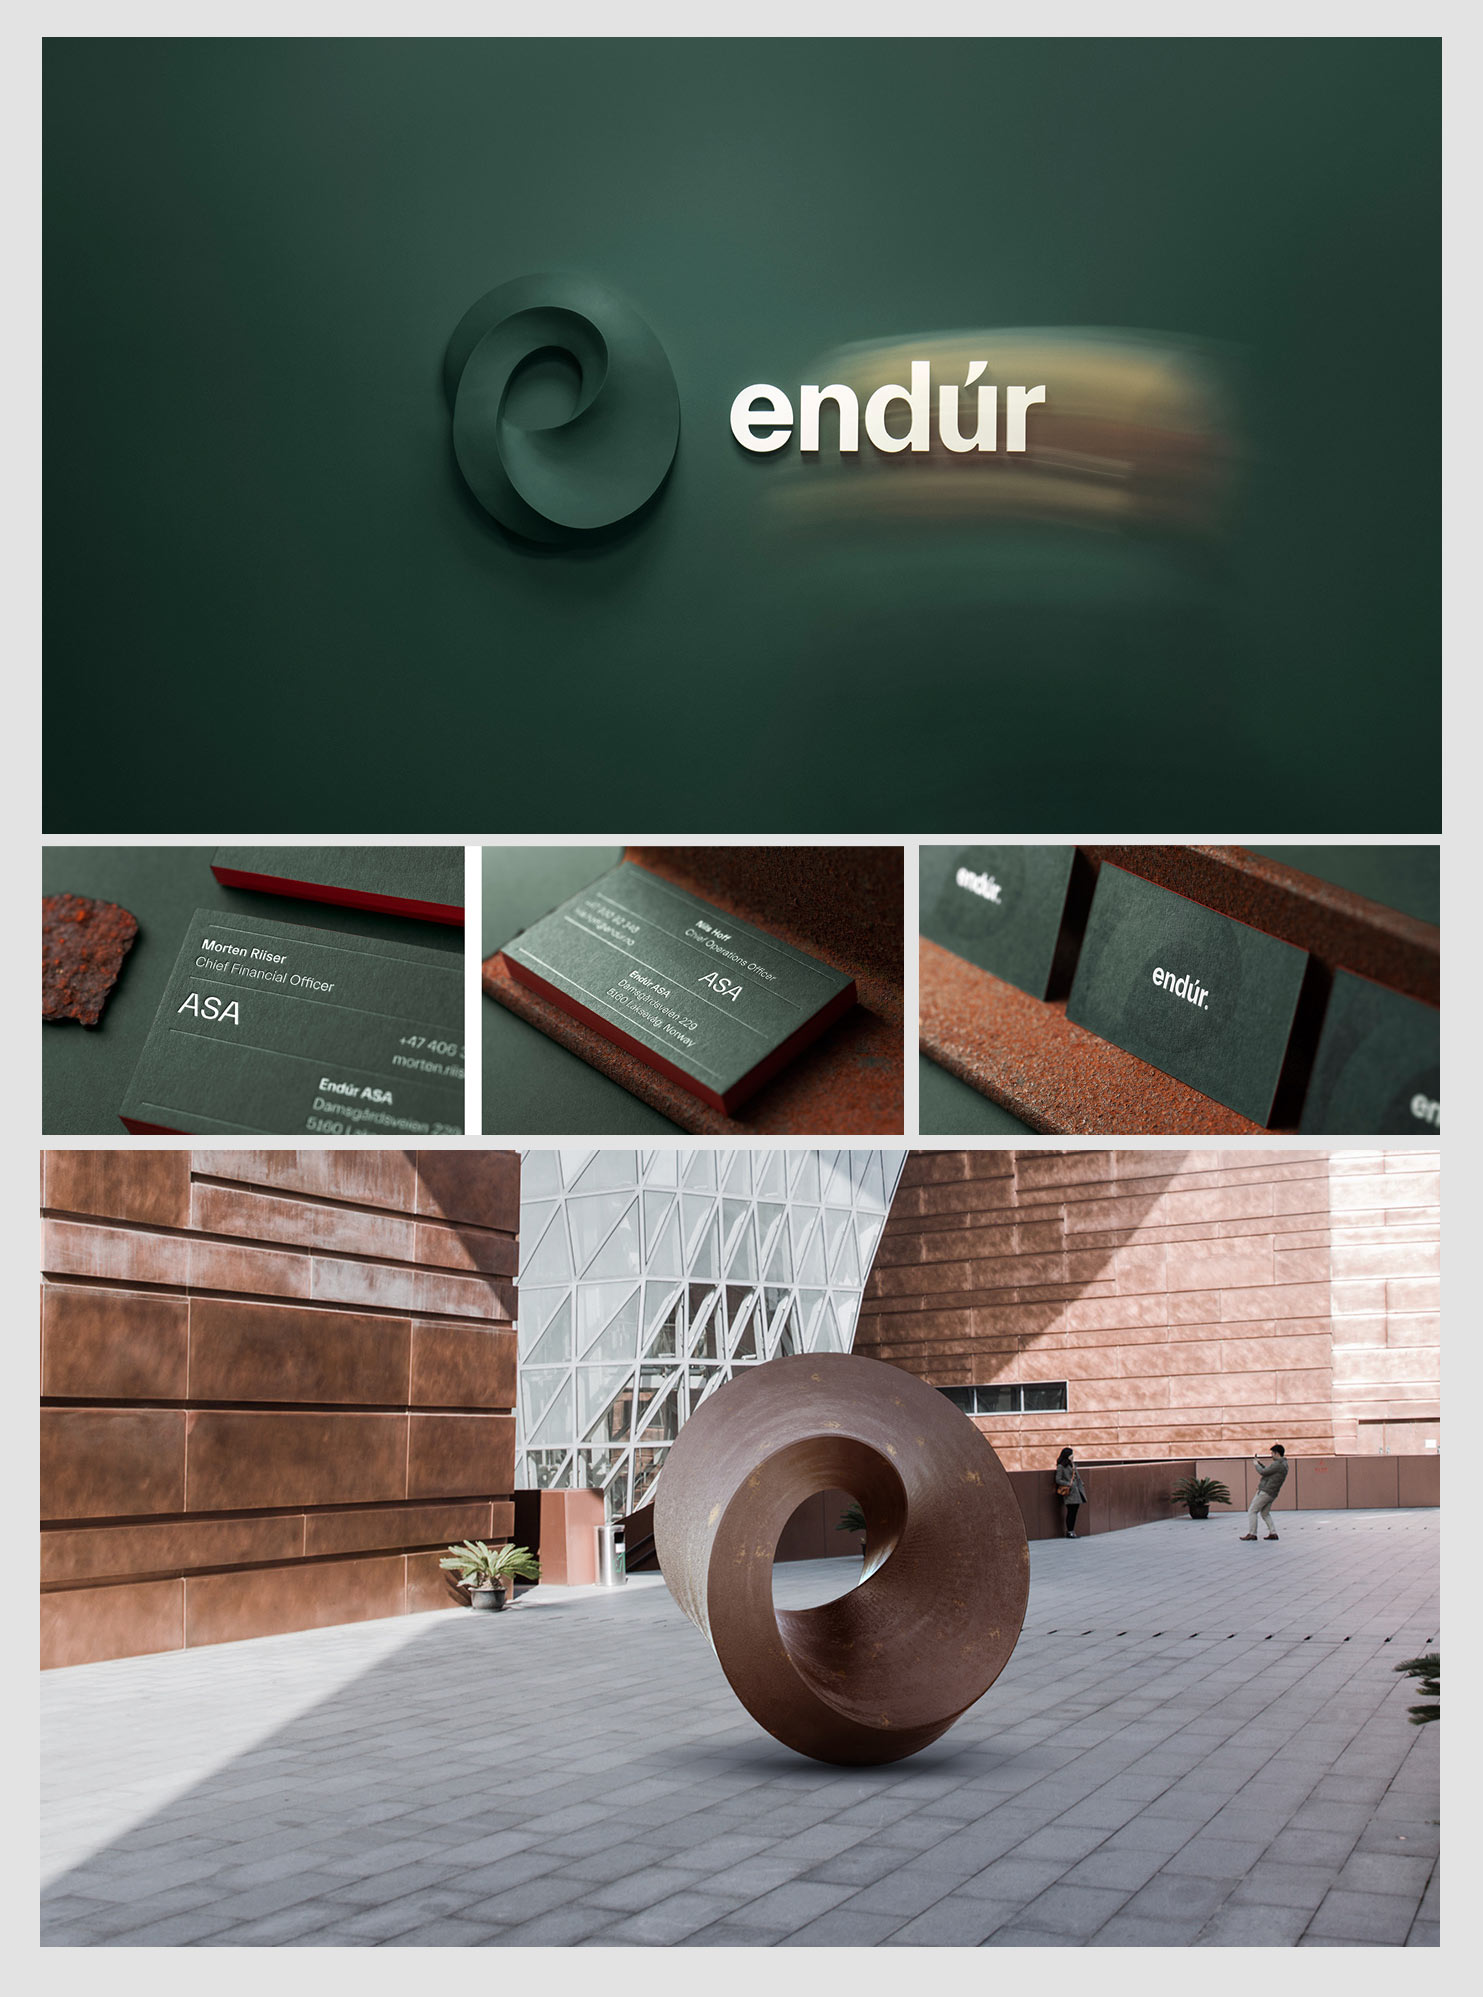 Świetne logo marki Endur